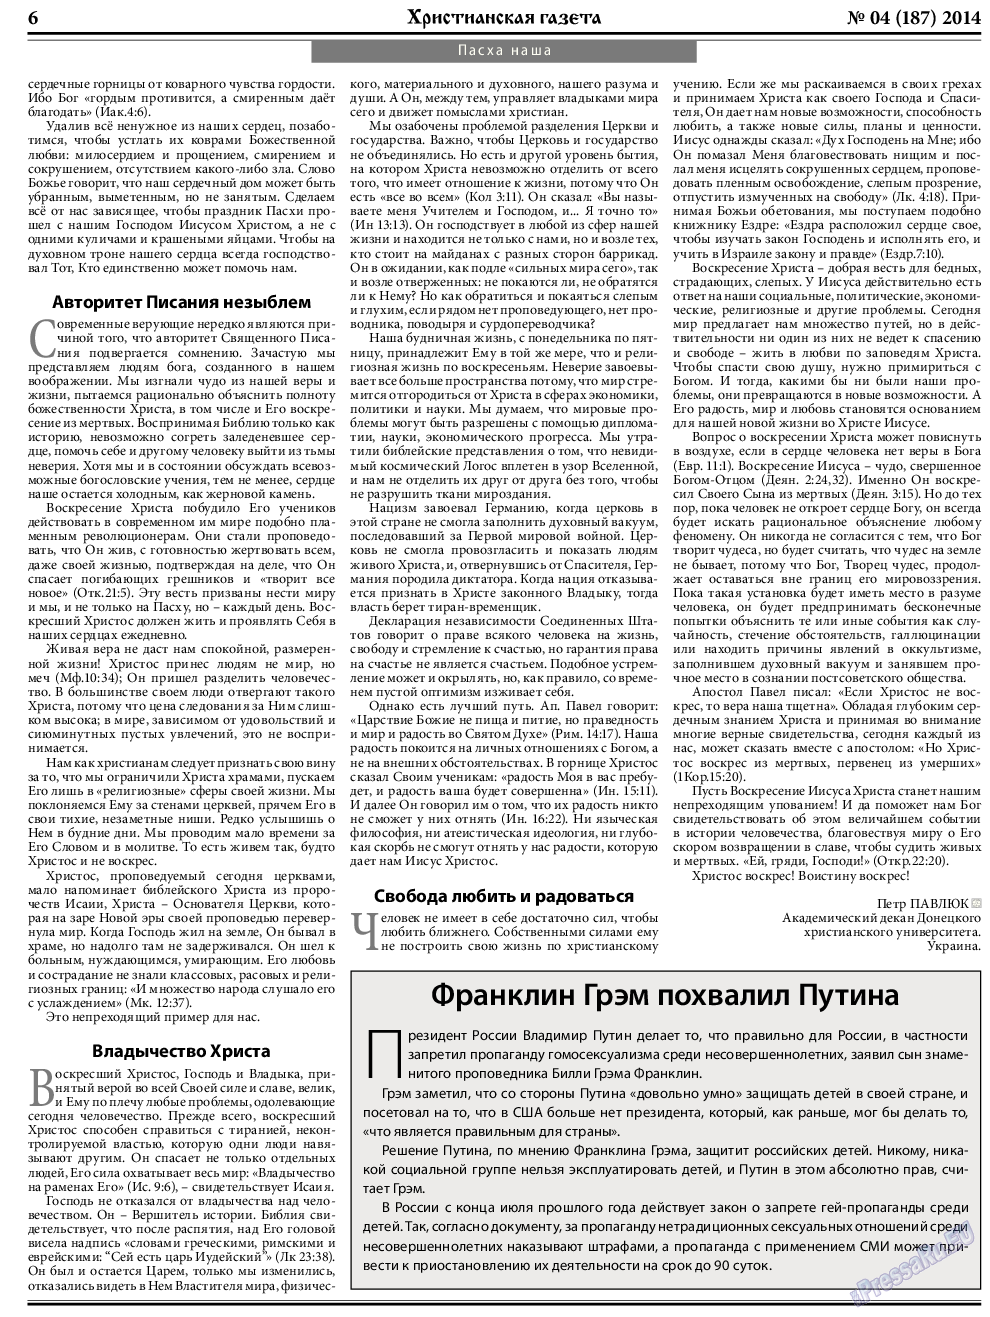 Христианская газета, газета. 2014 №4 стр.6